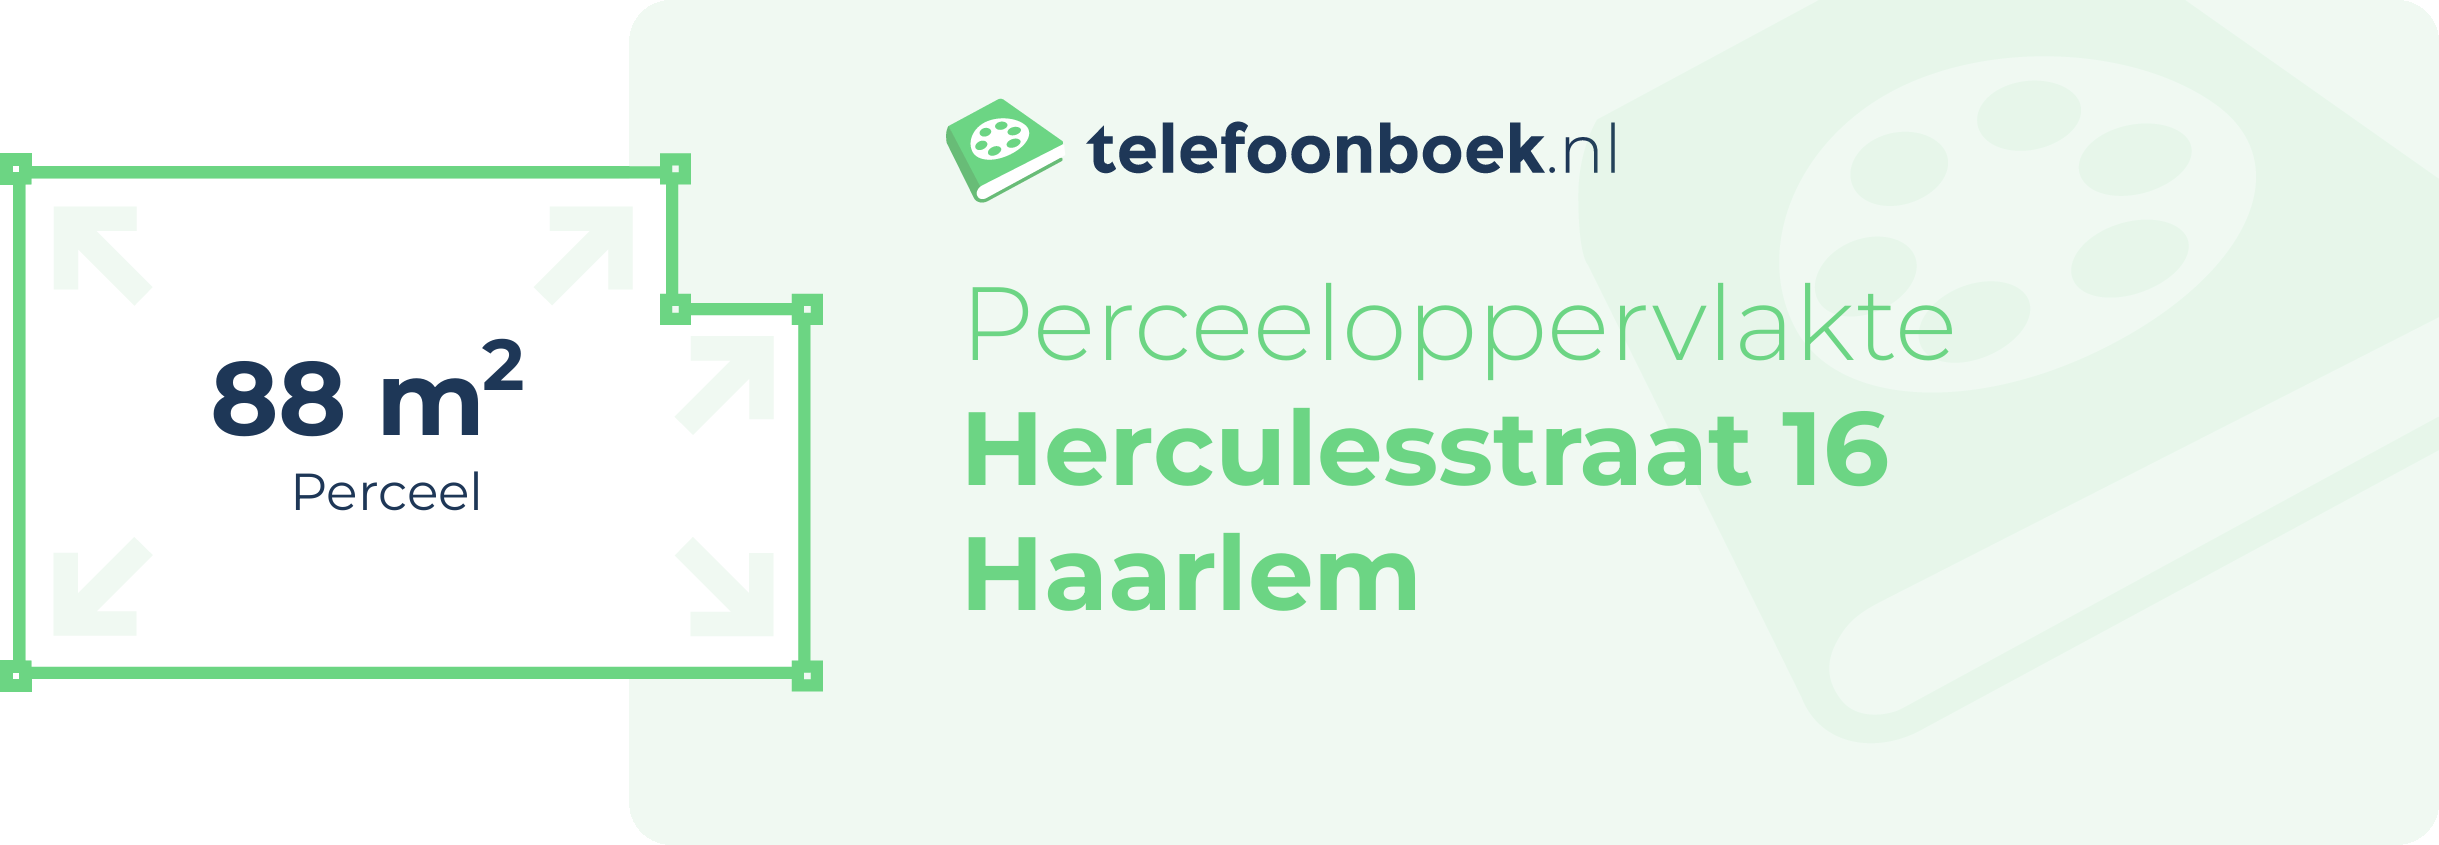 Perceeloppervlakte Herculesstraat 16 Haarlem